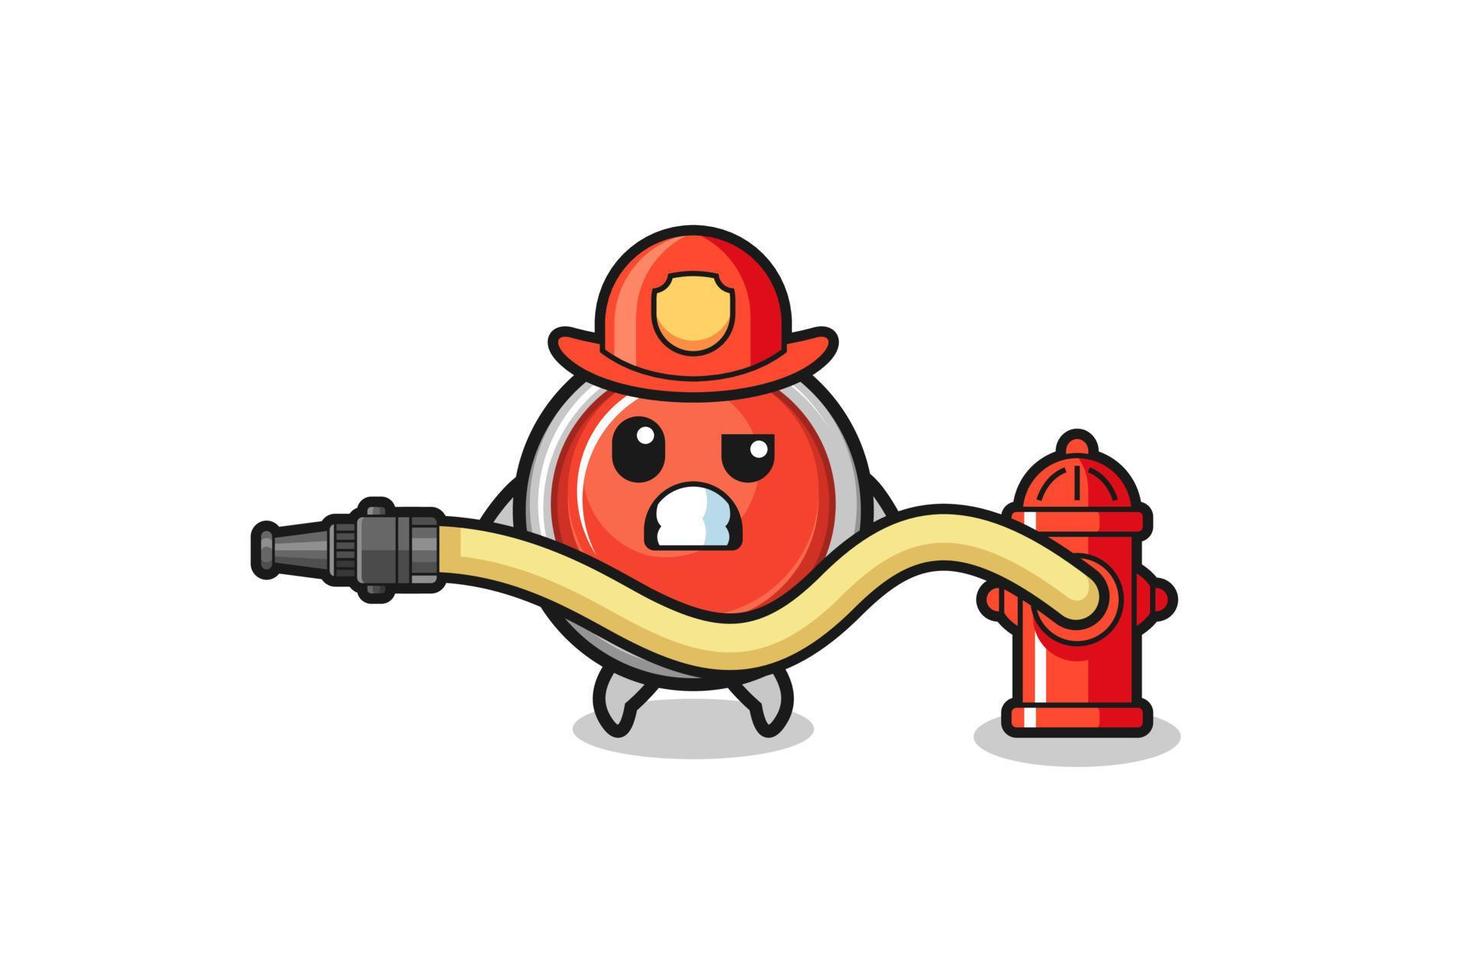 Notfall-Panikknopf-Cartoon als Feuerwehrmann-Maskottchen mit Wasserschlauch vektor